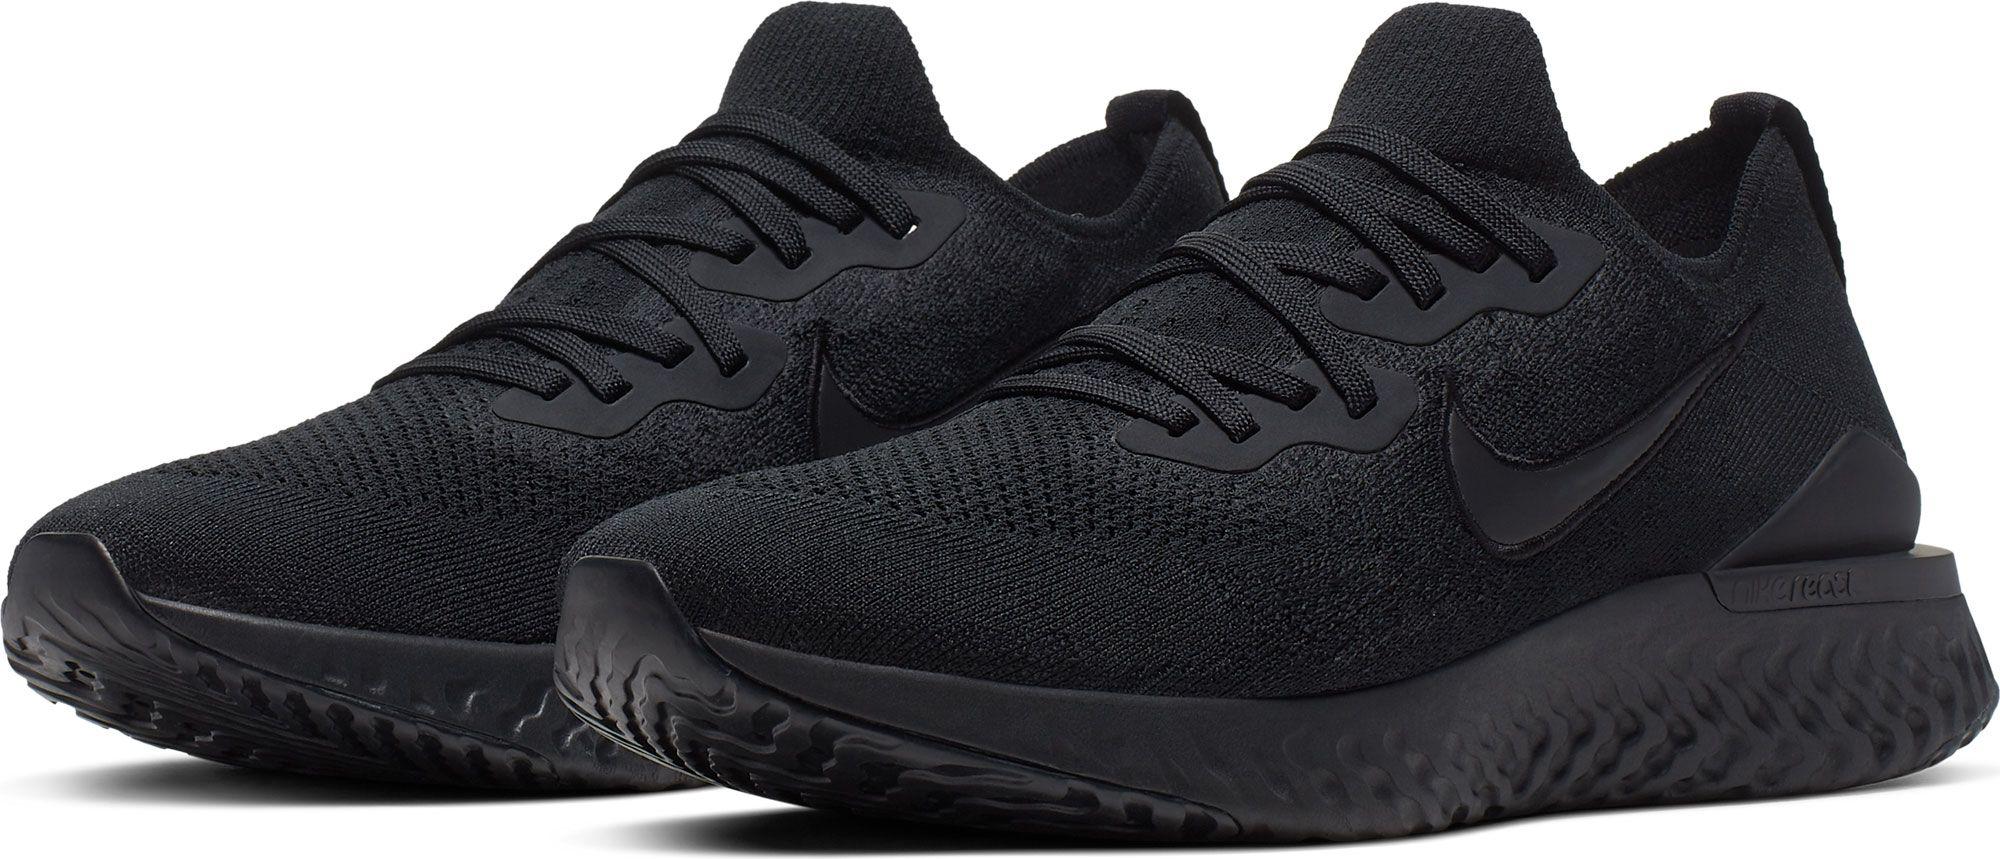 Nike Rubber Epic React Flyknit 2 Running Shoe in Black/Black-White (Black)  for Men | Lyst